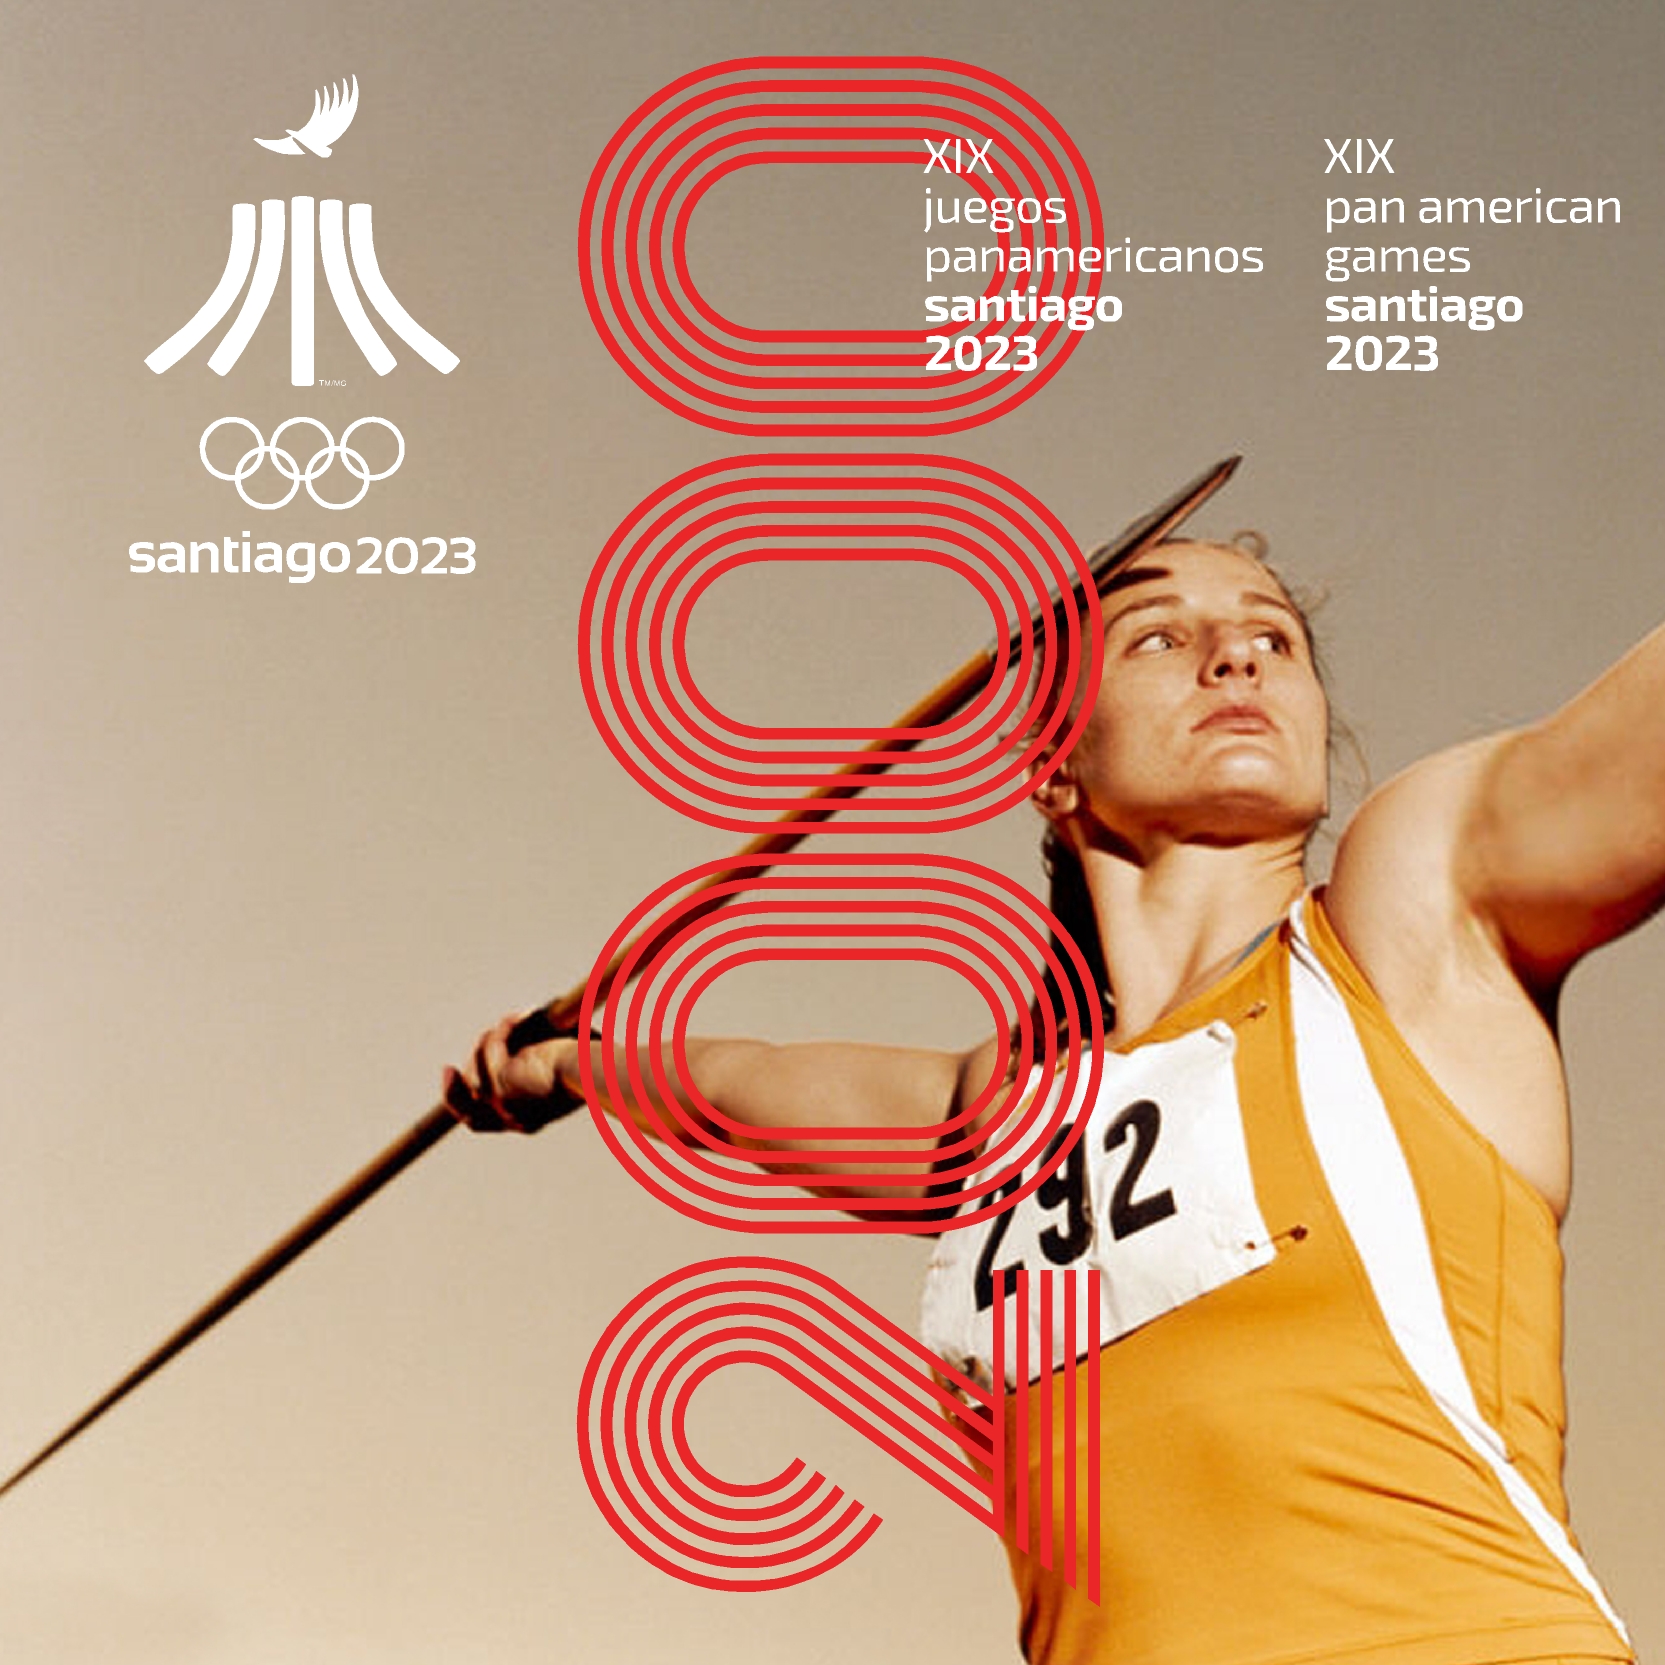 Juegos Panamericanos Santiago 2023 2000 instagram 5